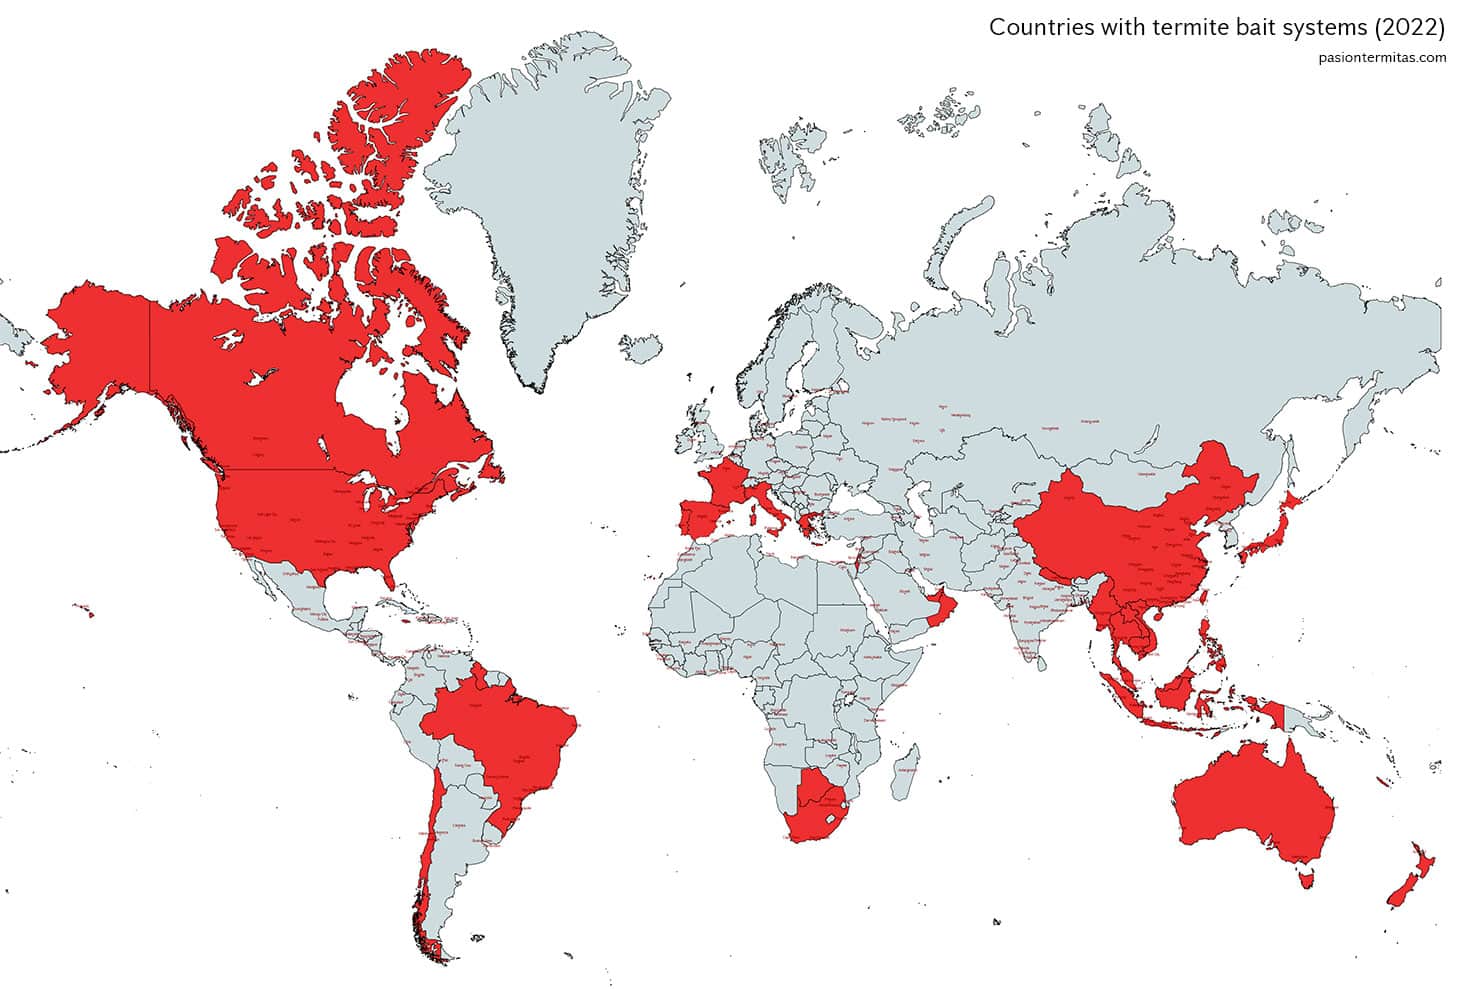 Todos los países que utilizan sistemas de cebos para eliminar termitas